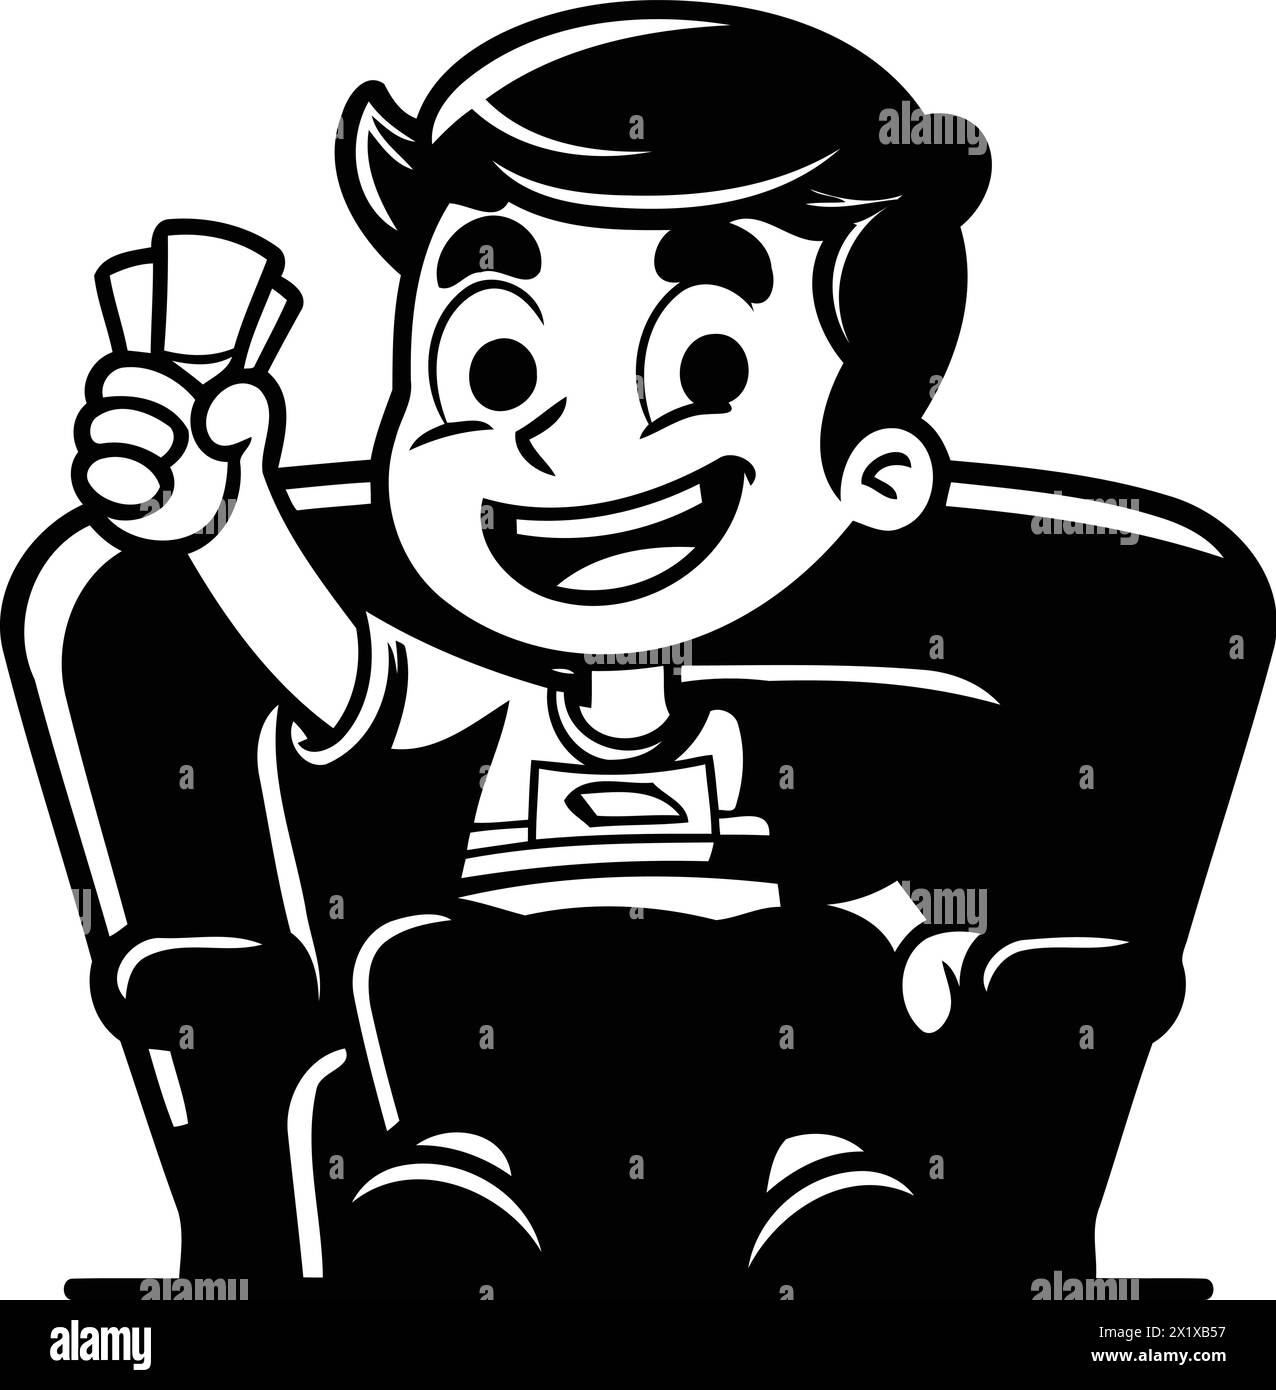 Garçon de dessin animé assis dans un fauteuil et mangeant du pop-corn. Illustration vectorielle. Illustration de Vecteur